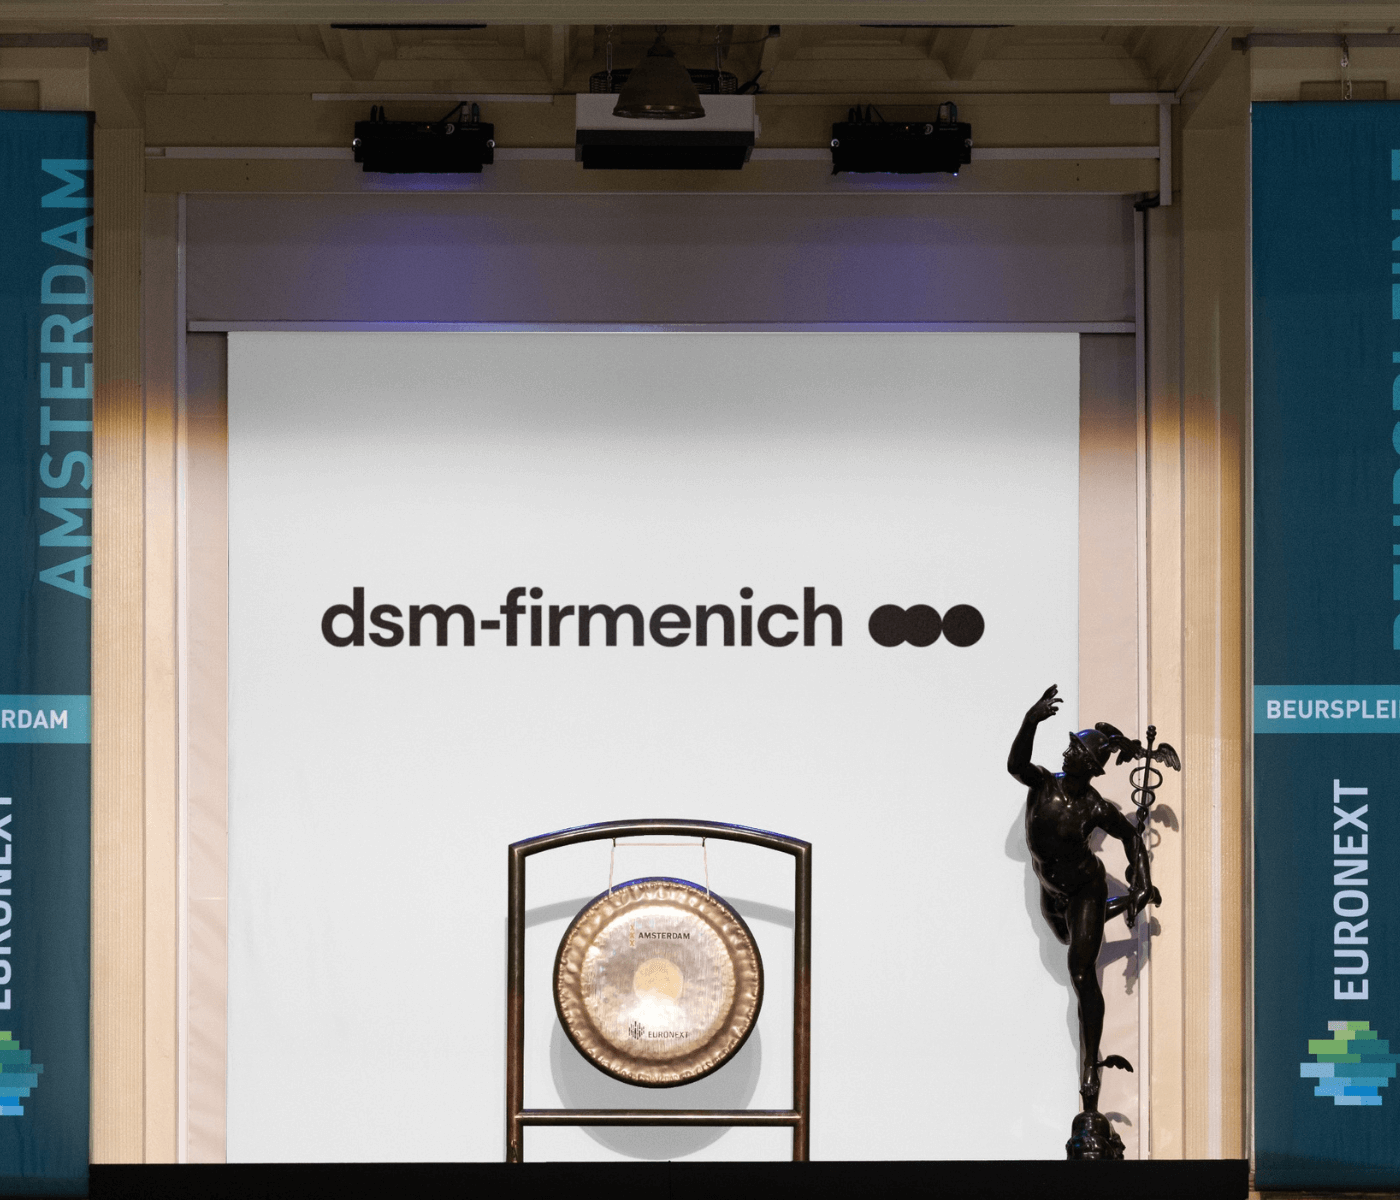 Dsm-firmenich se estrena como empresa innovadora en nutrición, salud y belleza